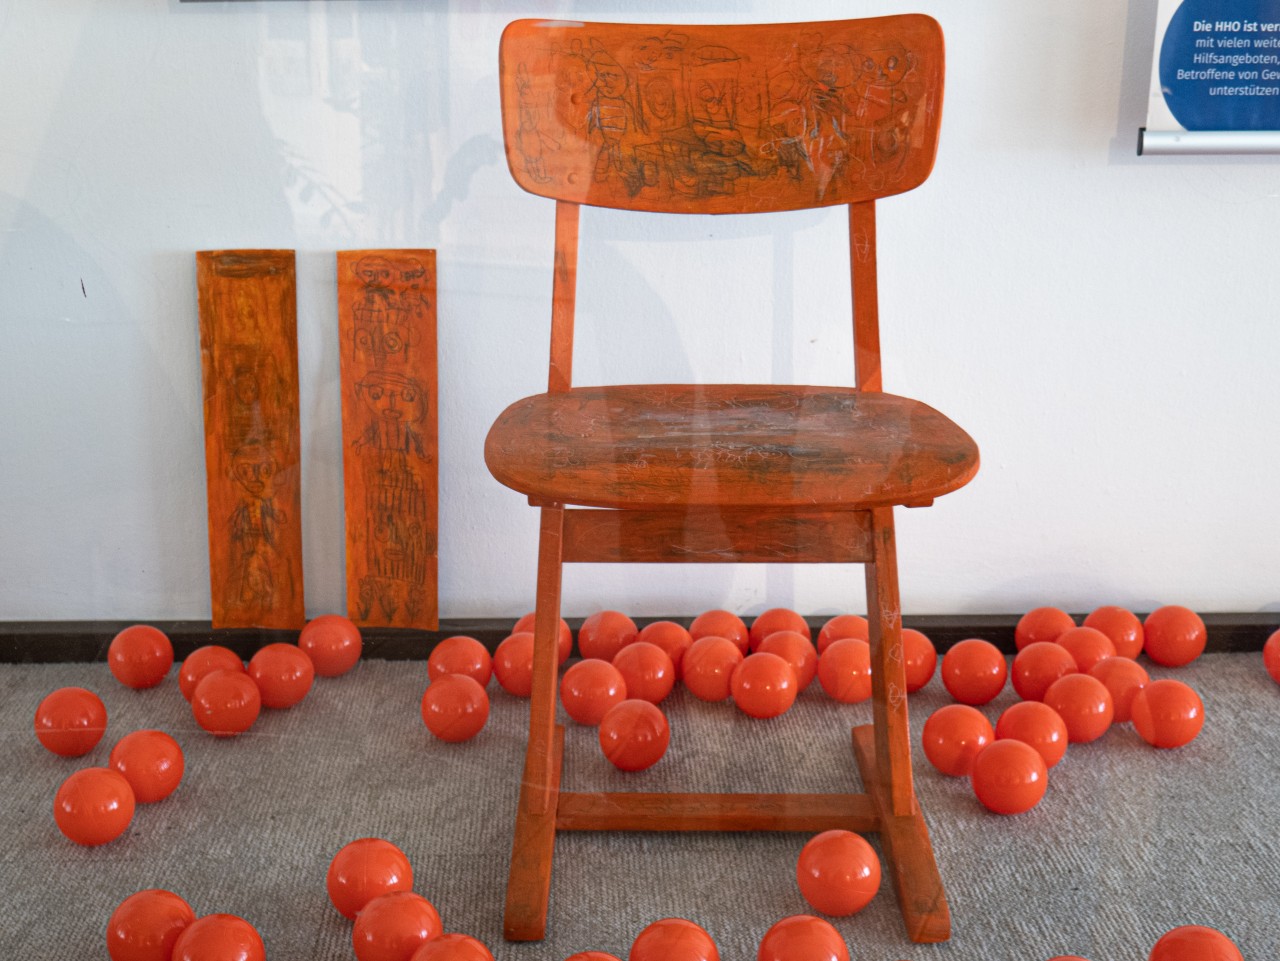 Orangener Stuhl steht in einem Schaufenster mit orangenen Spielbällen